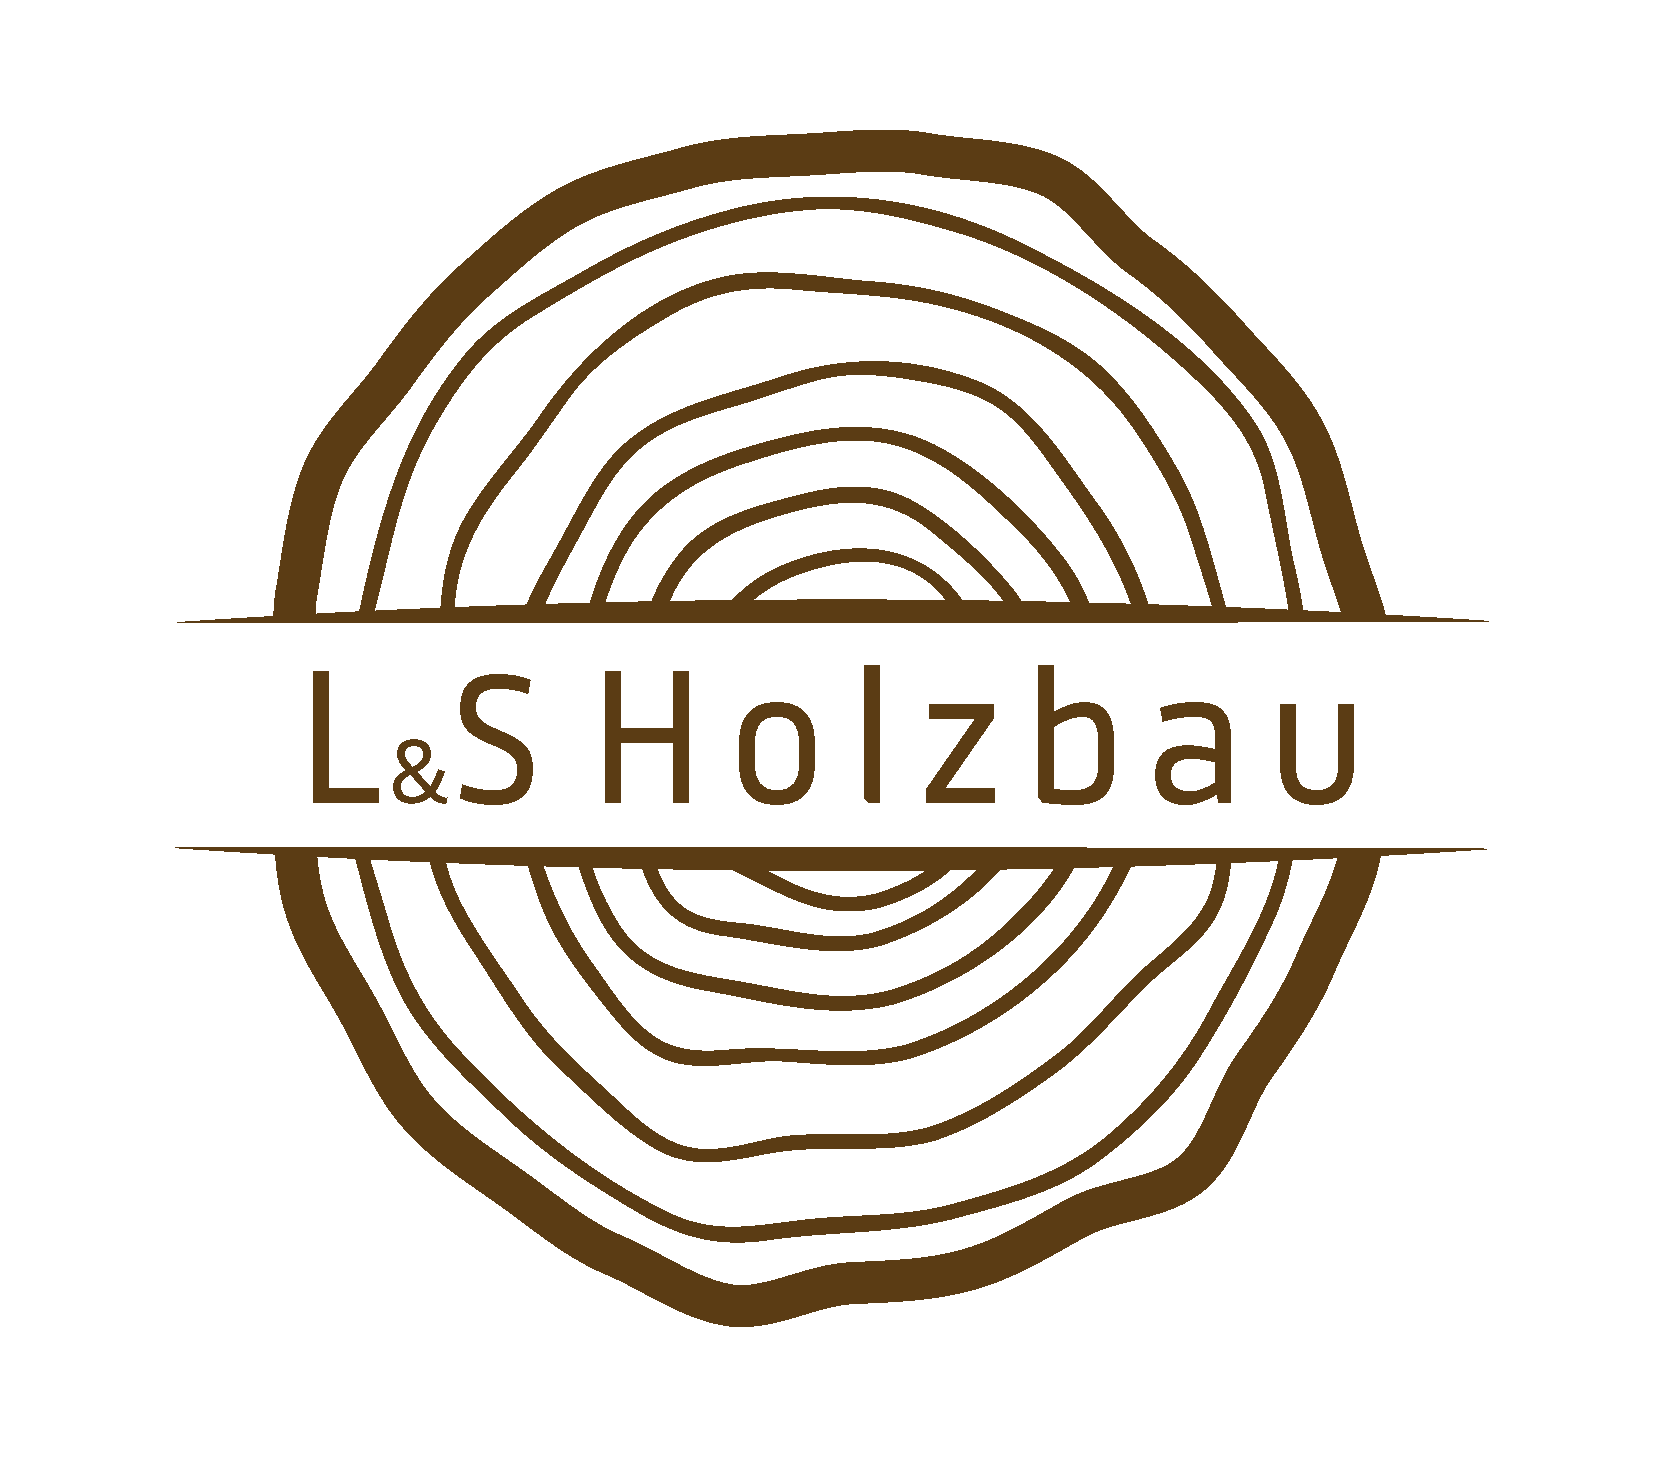 L&S Holzbau